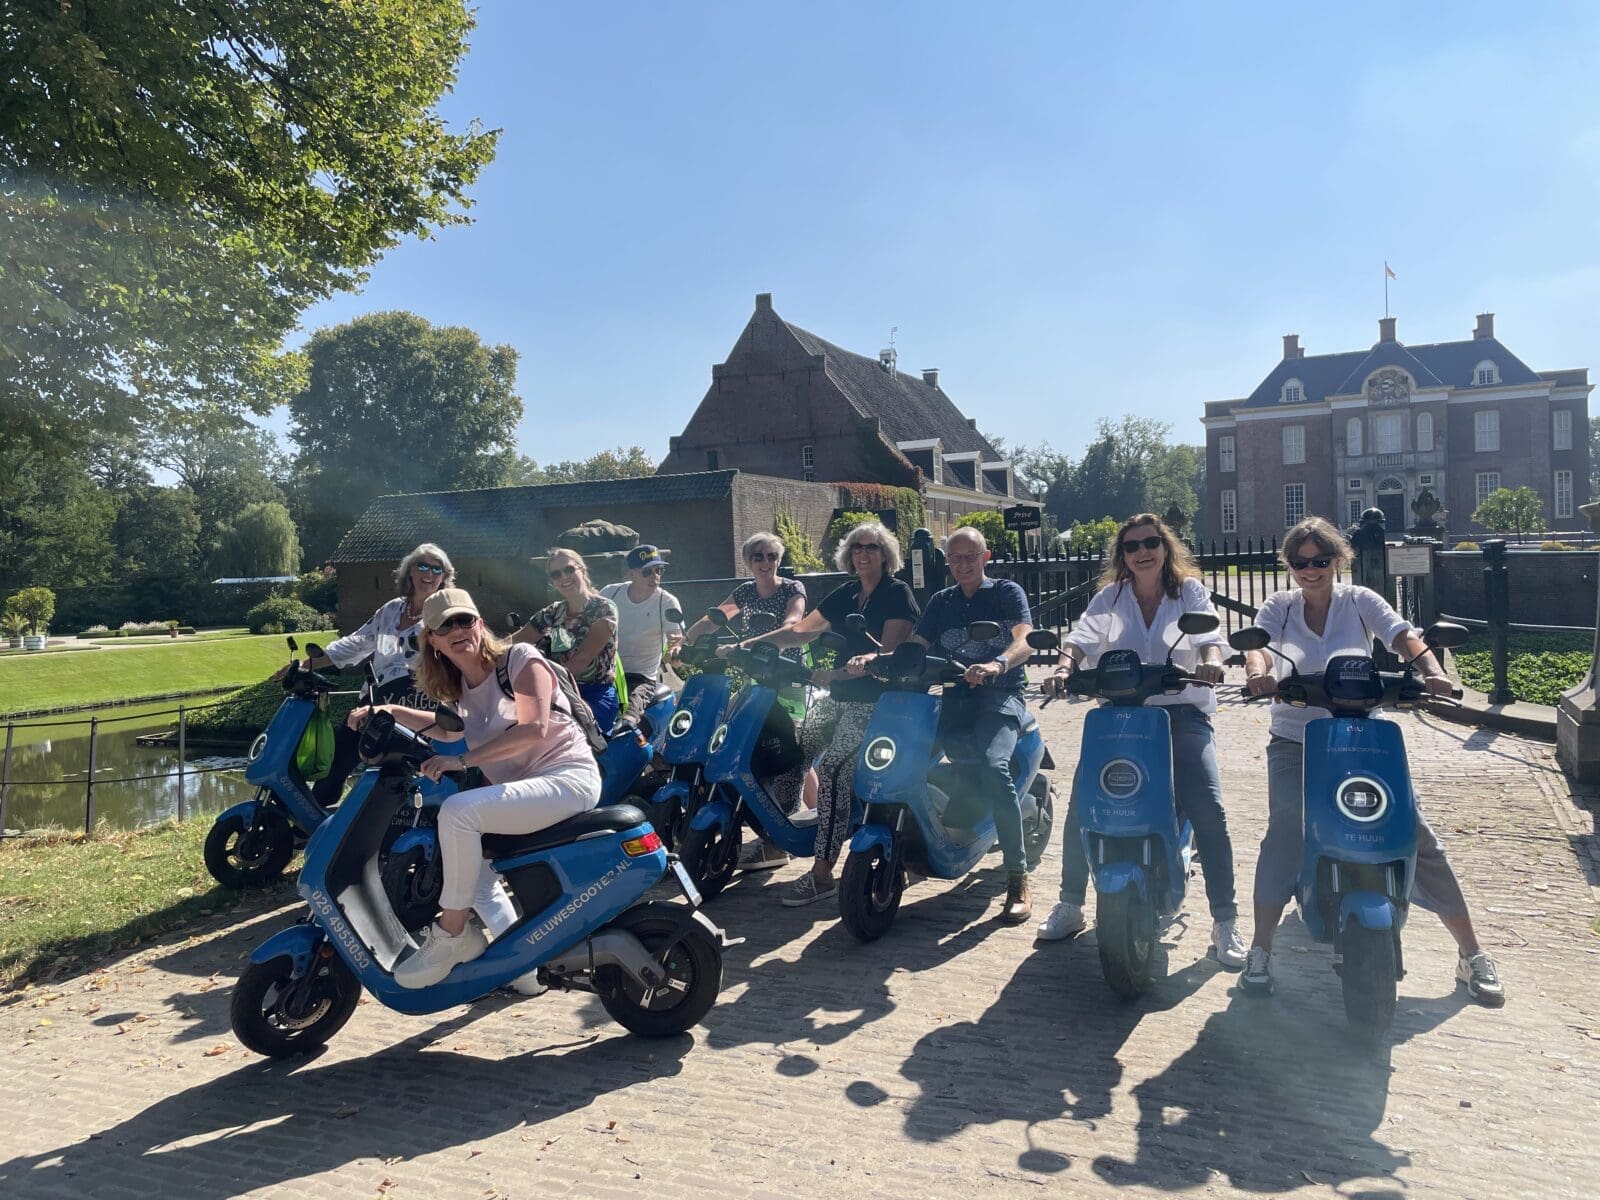 Groep mensen op scooters